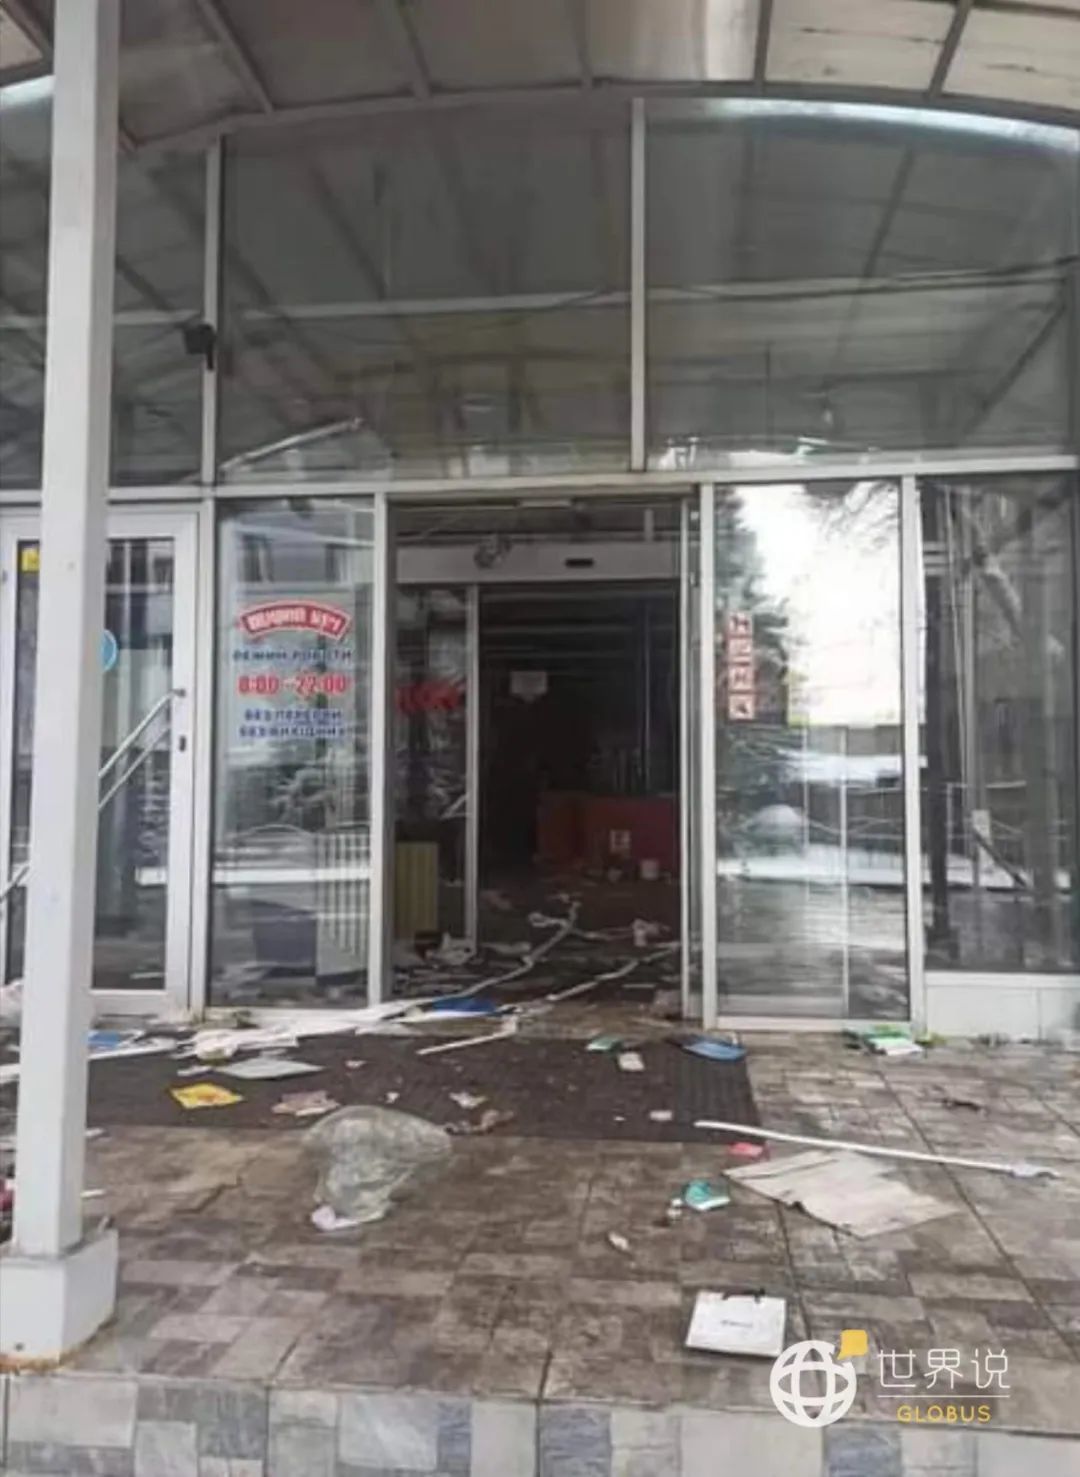 ●“现在马里乌波尔的所有商店24/7开门，但是在既没有顾客也没有商品的情况下，这也没什么意义。”/ 丹尼斯摄于马里乌波尔